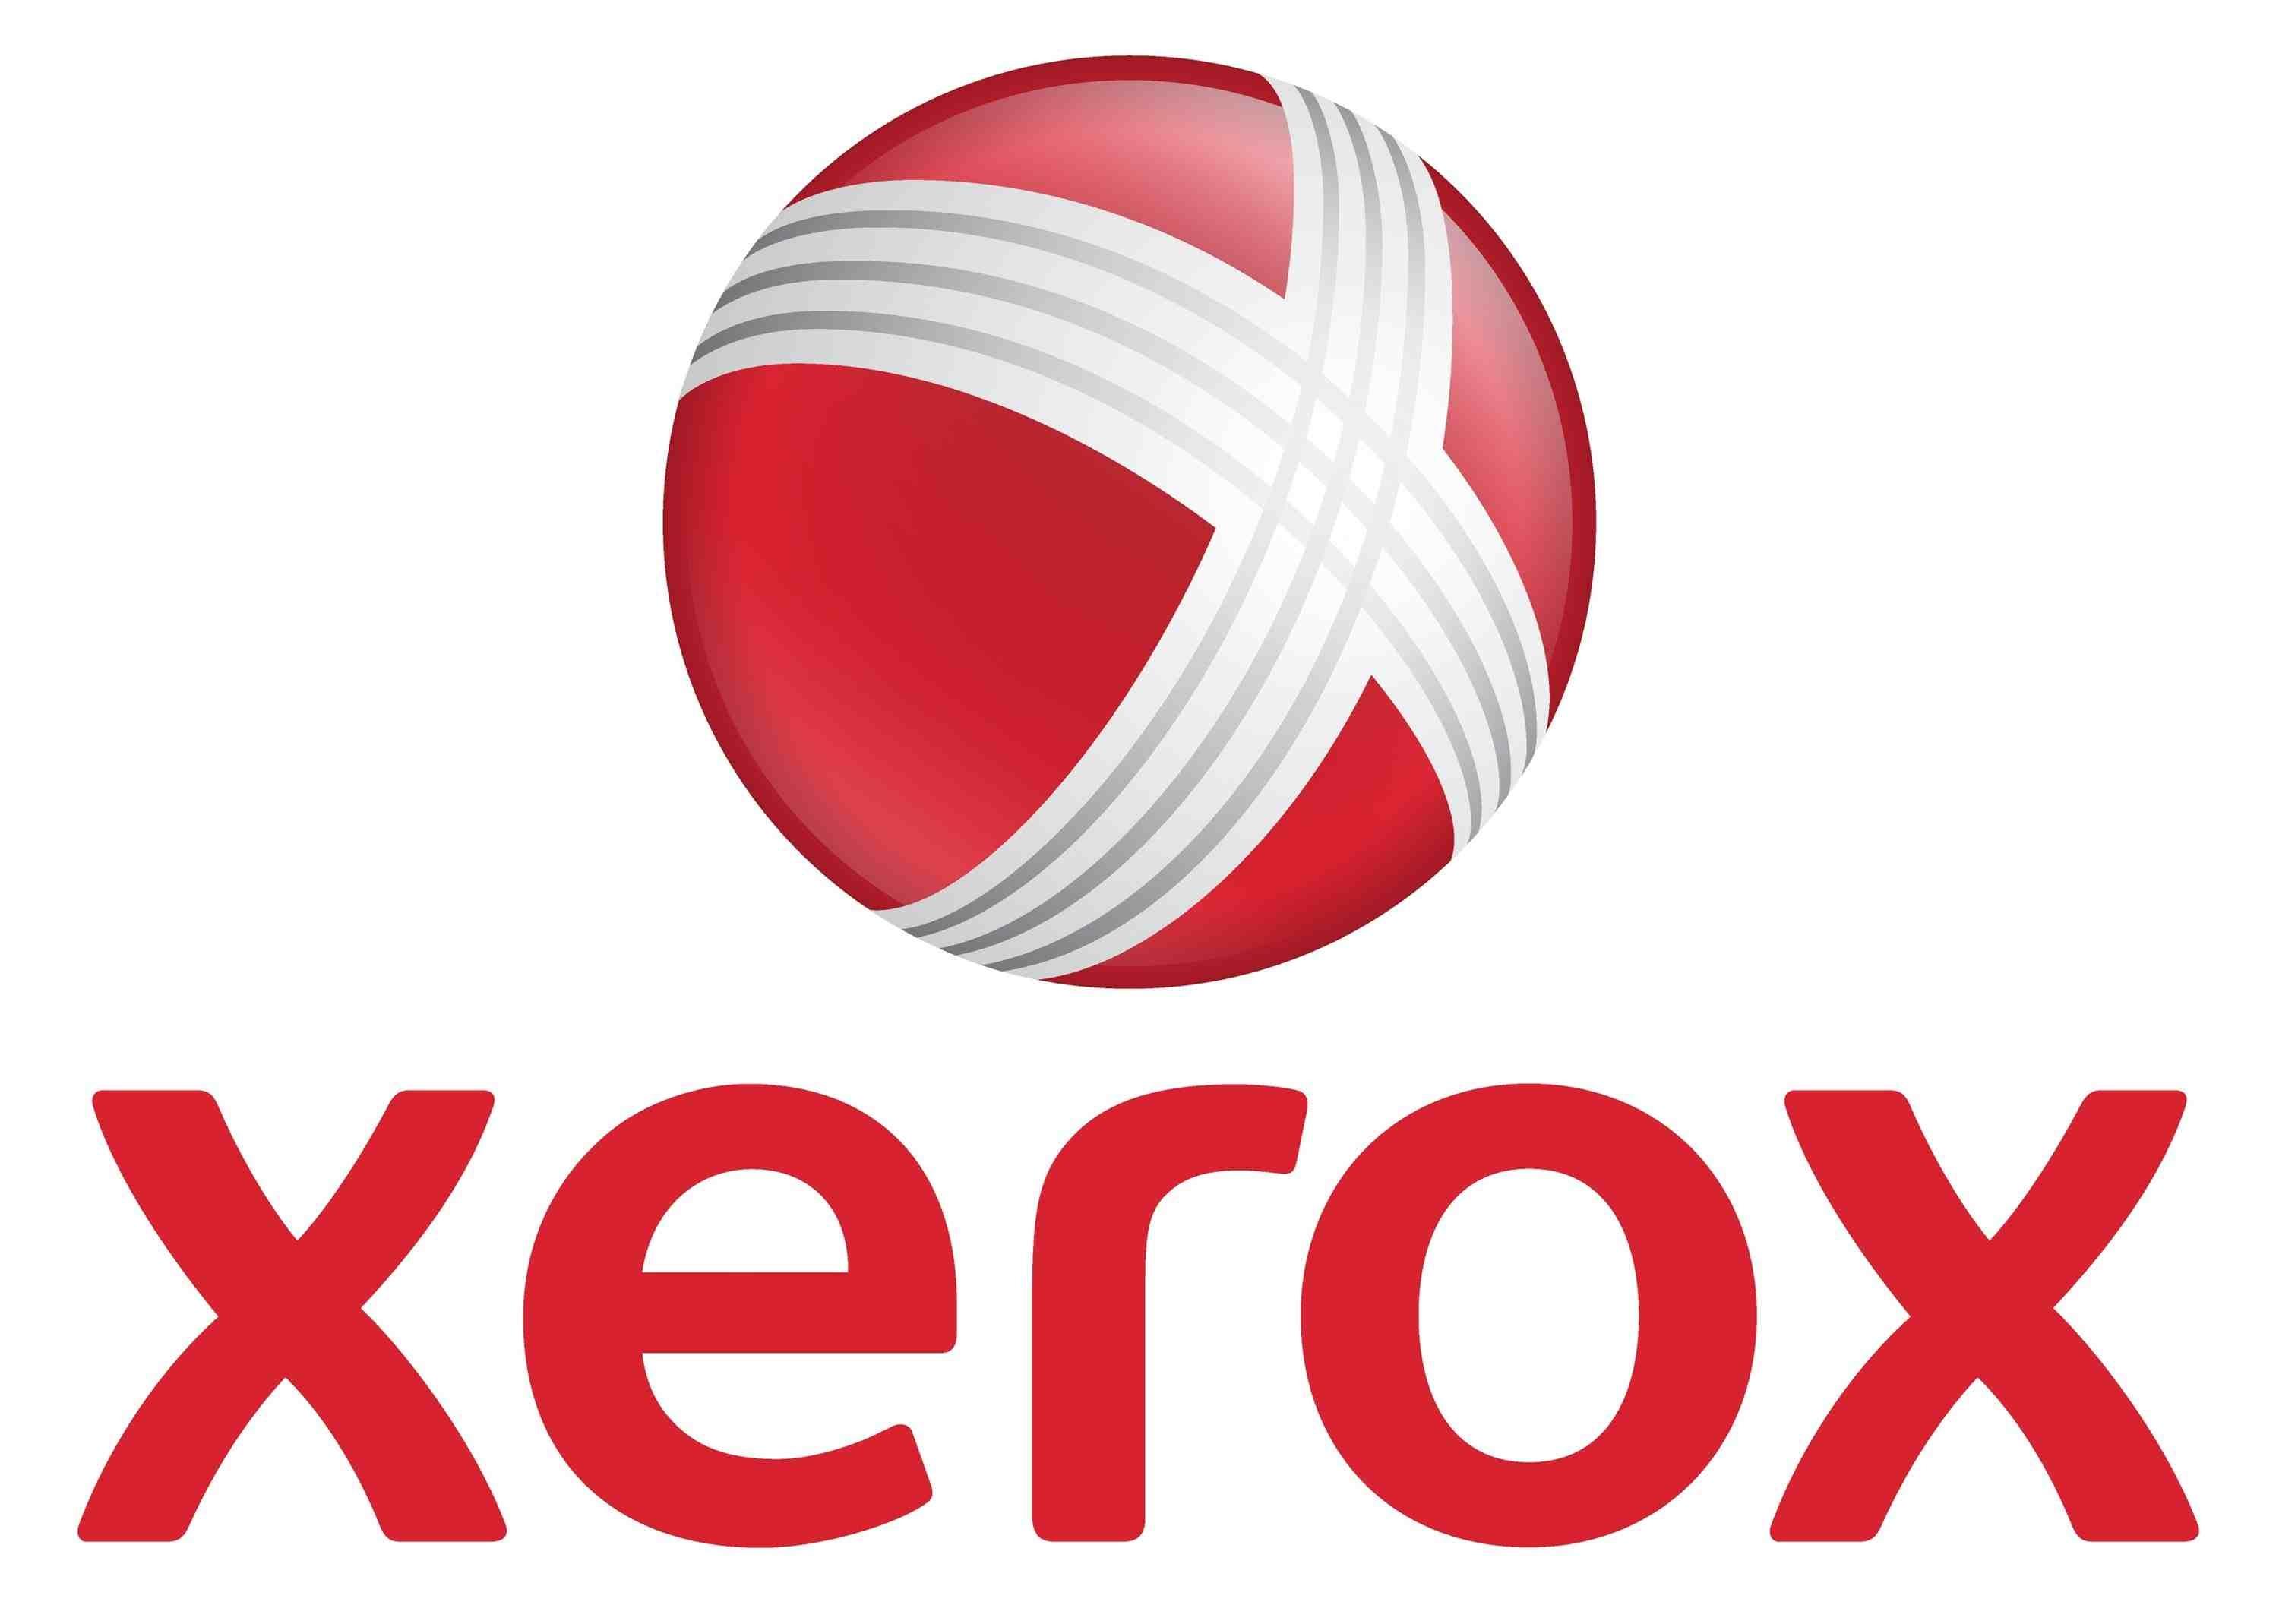 Вал подачи Xerox оригинальный для Xerox DC265 (006K20110)